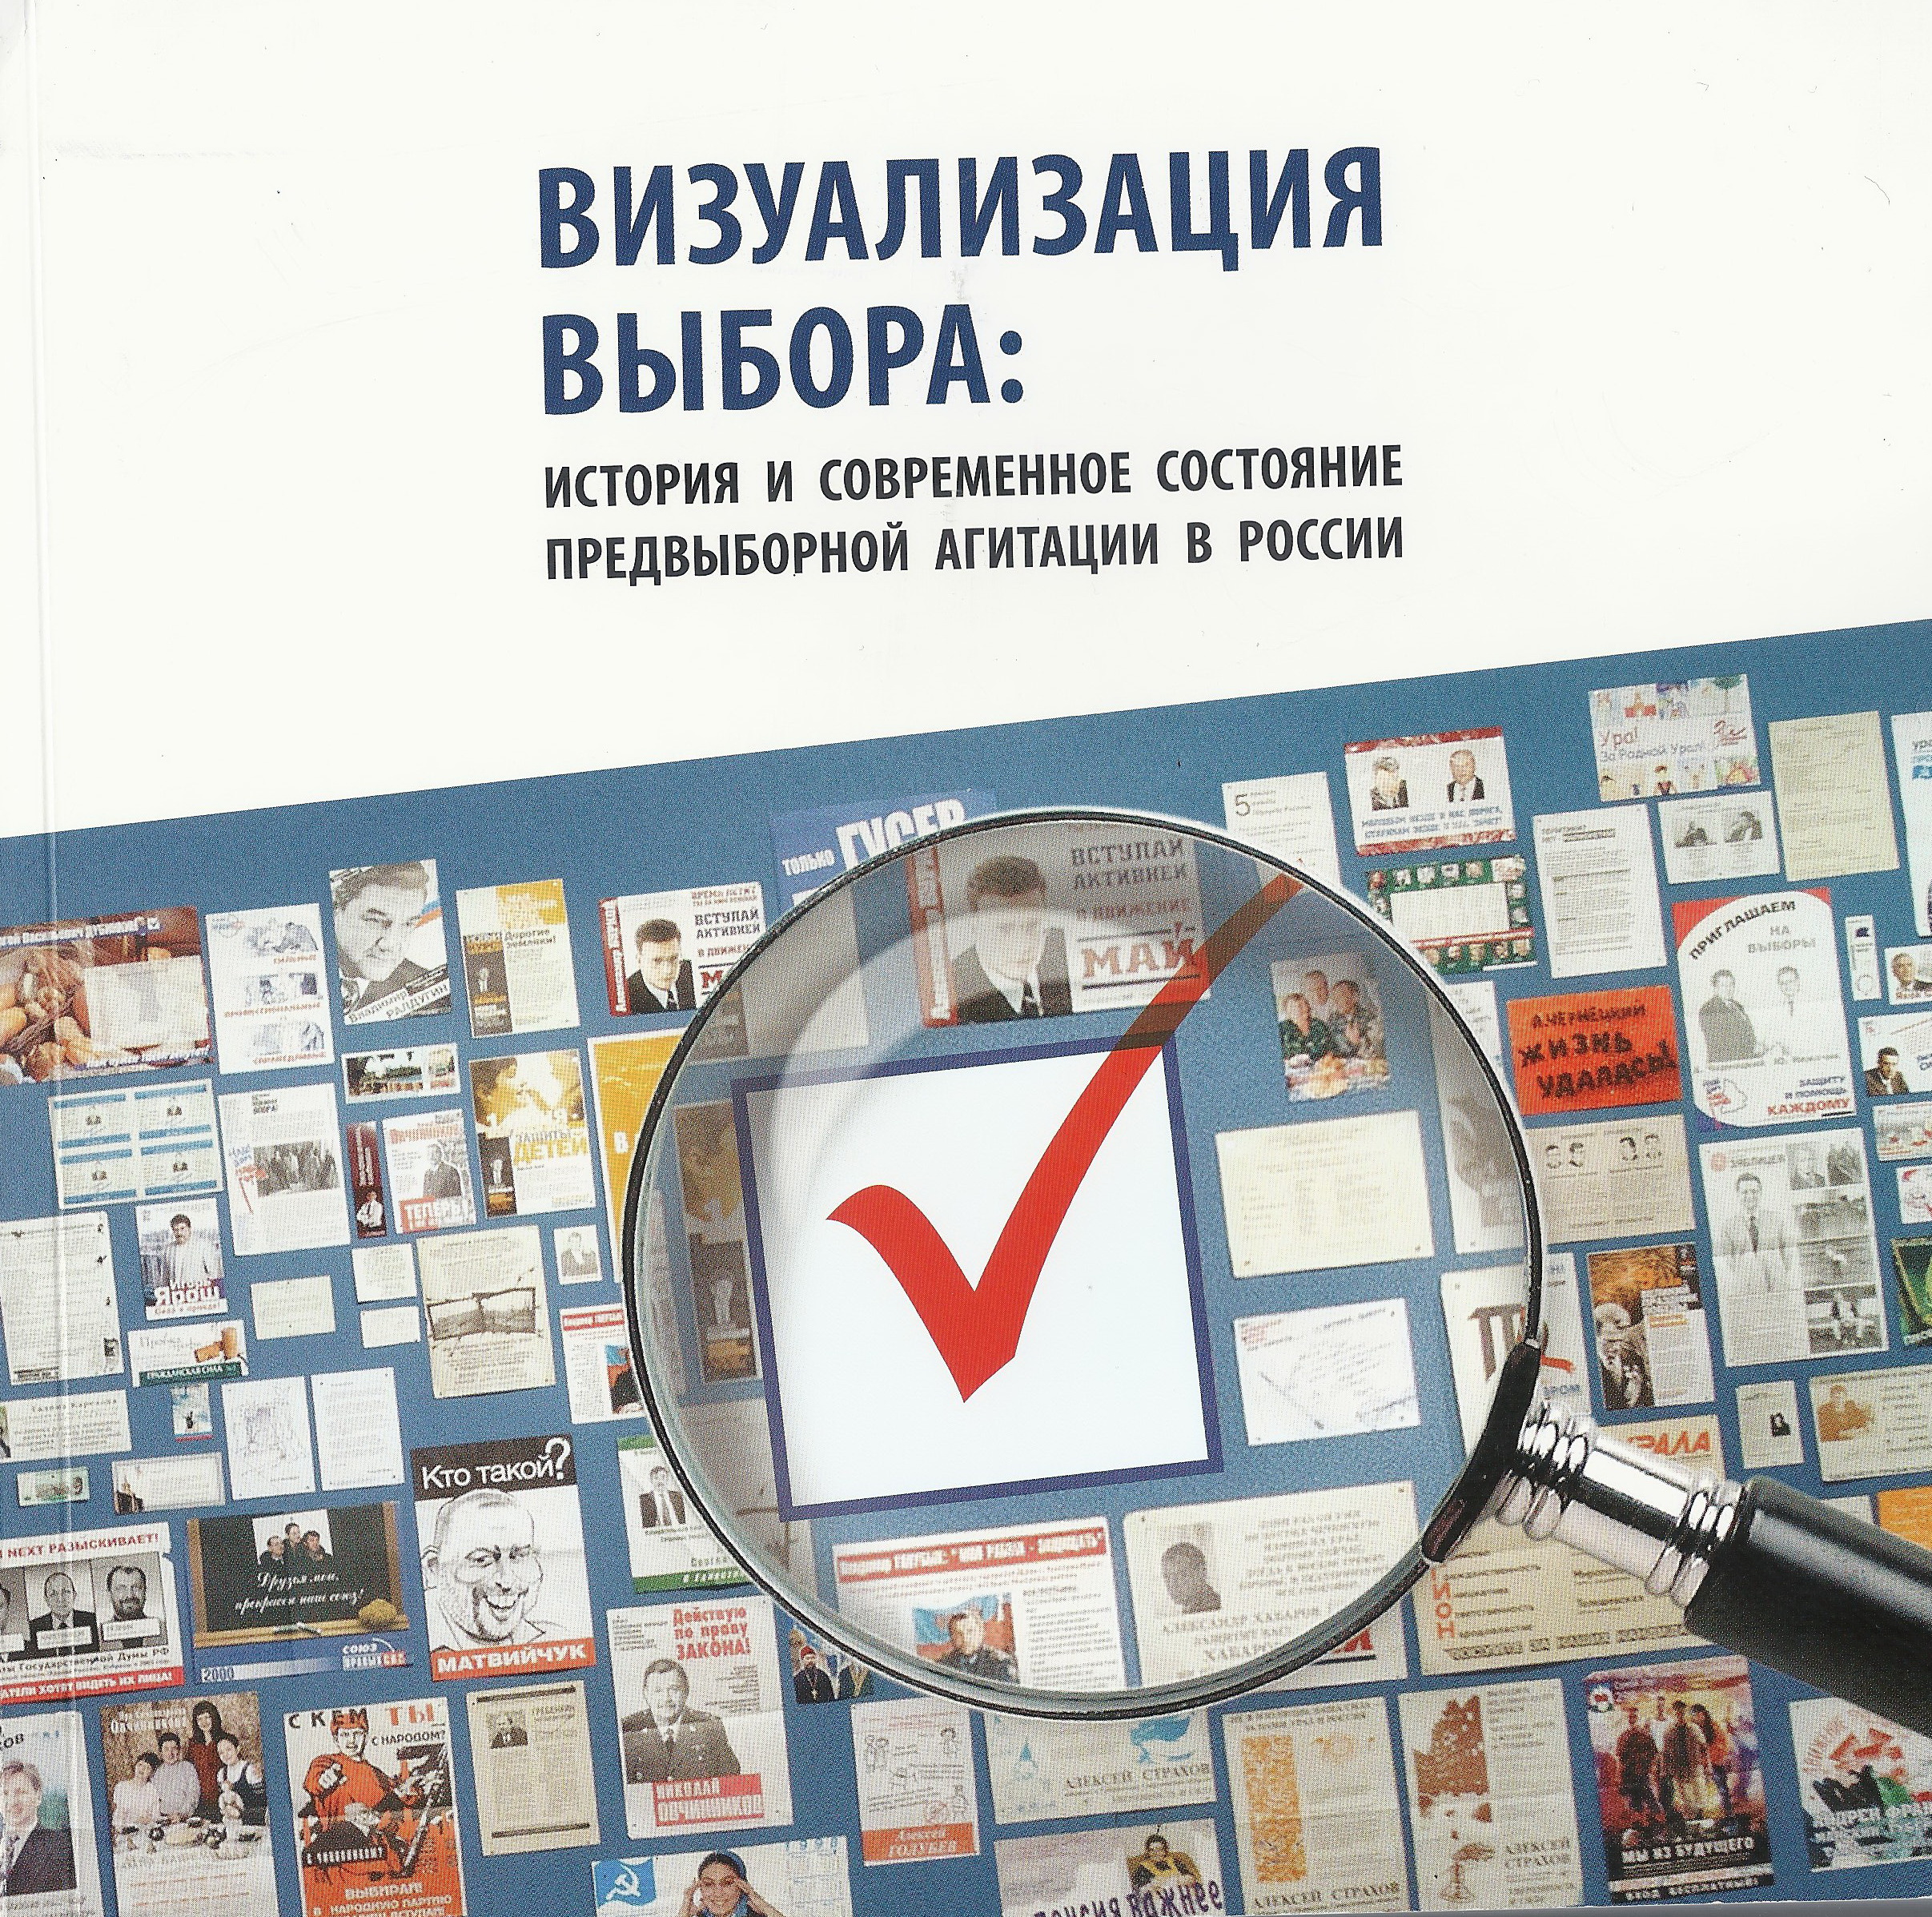 Визуализация выбора: история и современное состояние предвыборной агитации в России